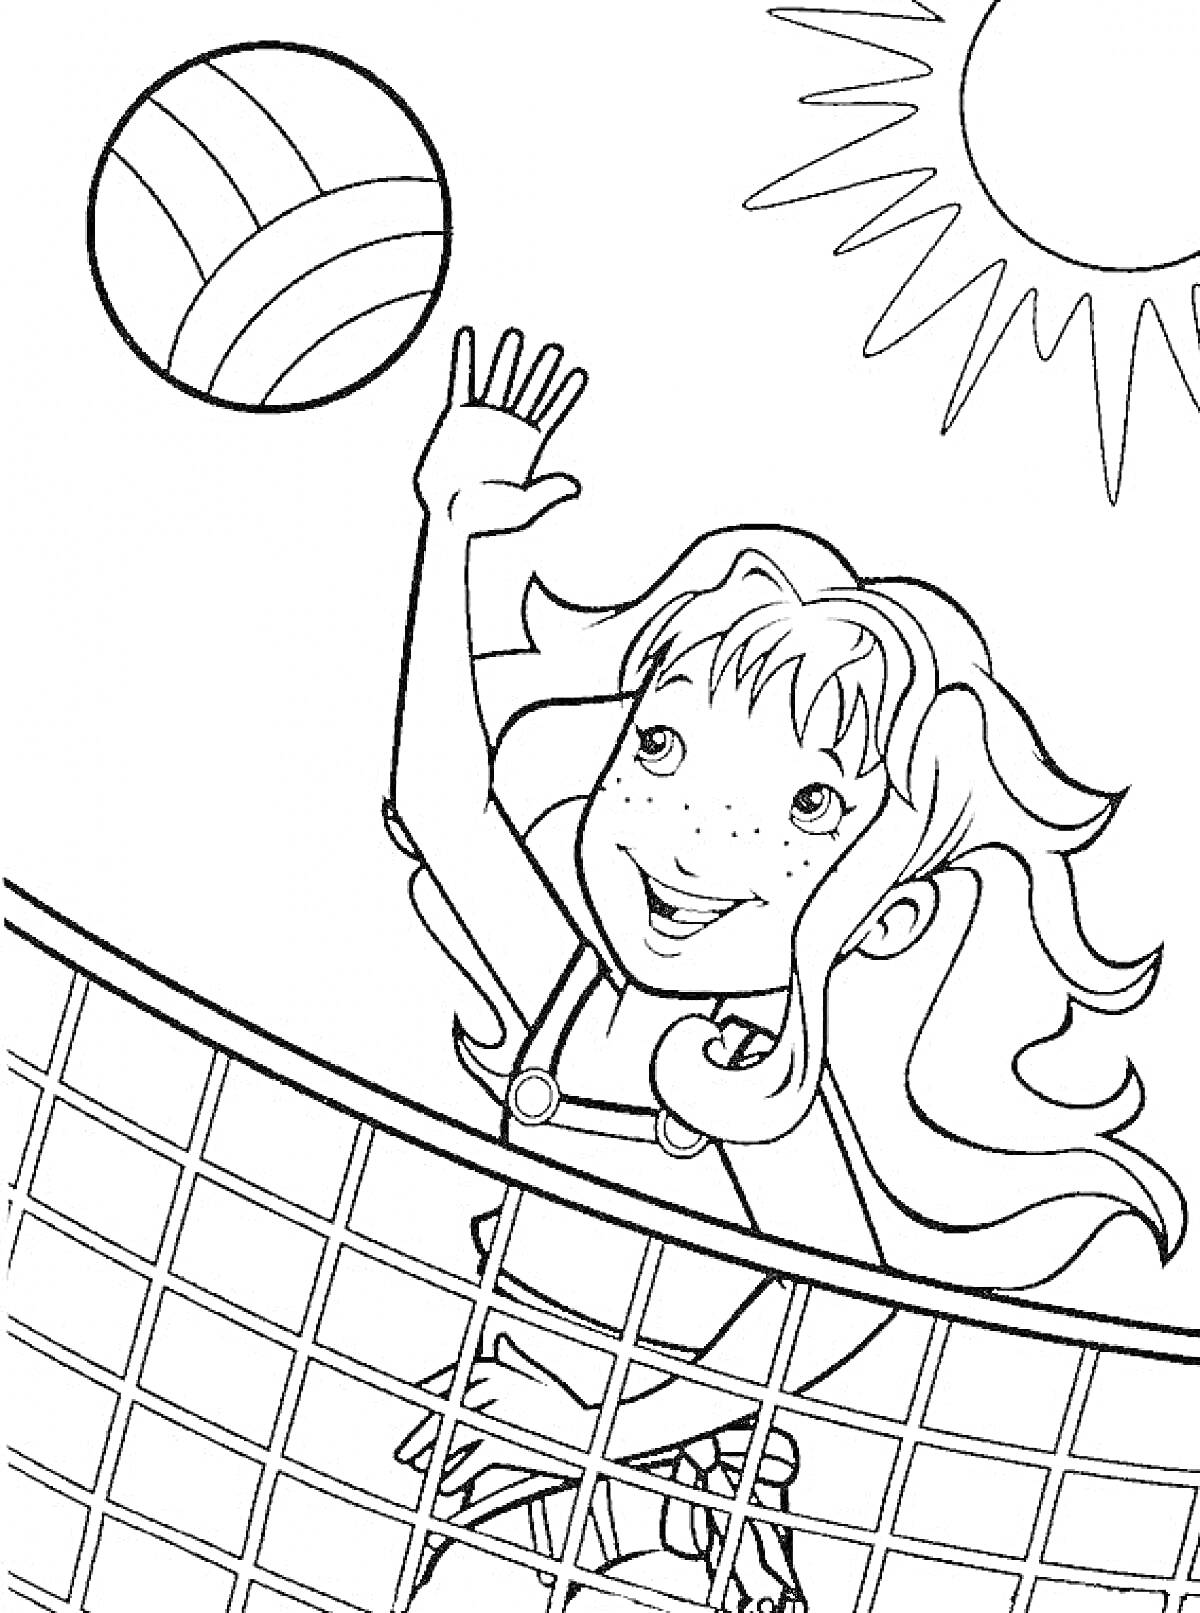 Девочка с волейбольным мячом, сетка и солнце